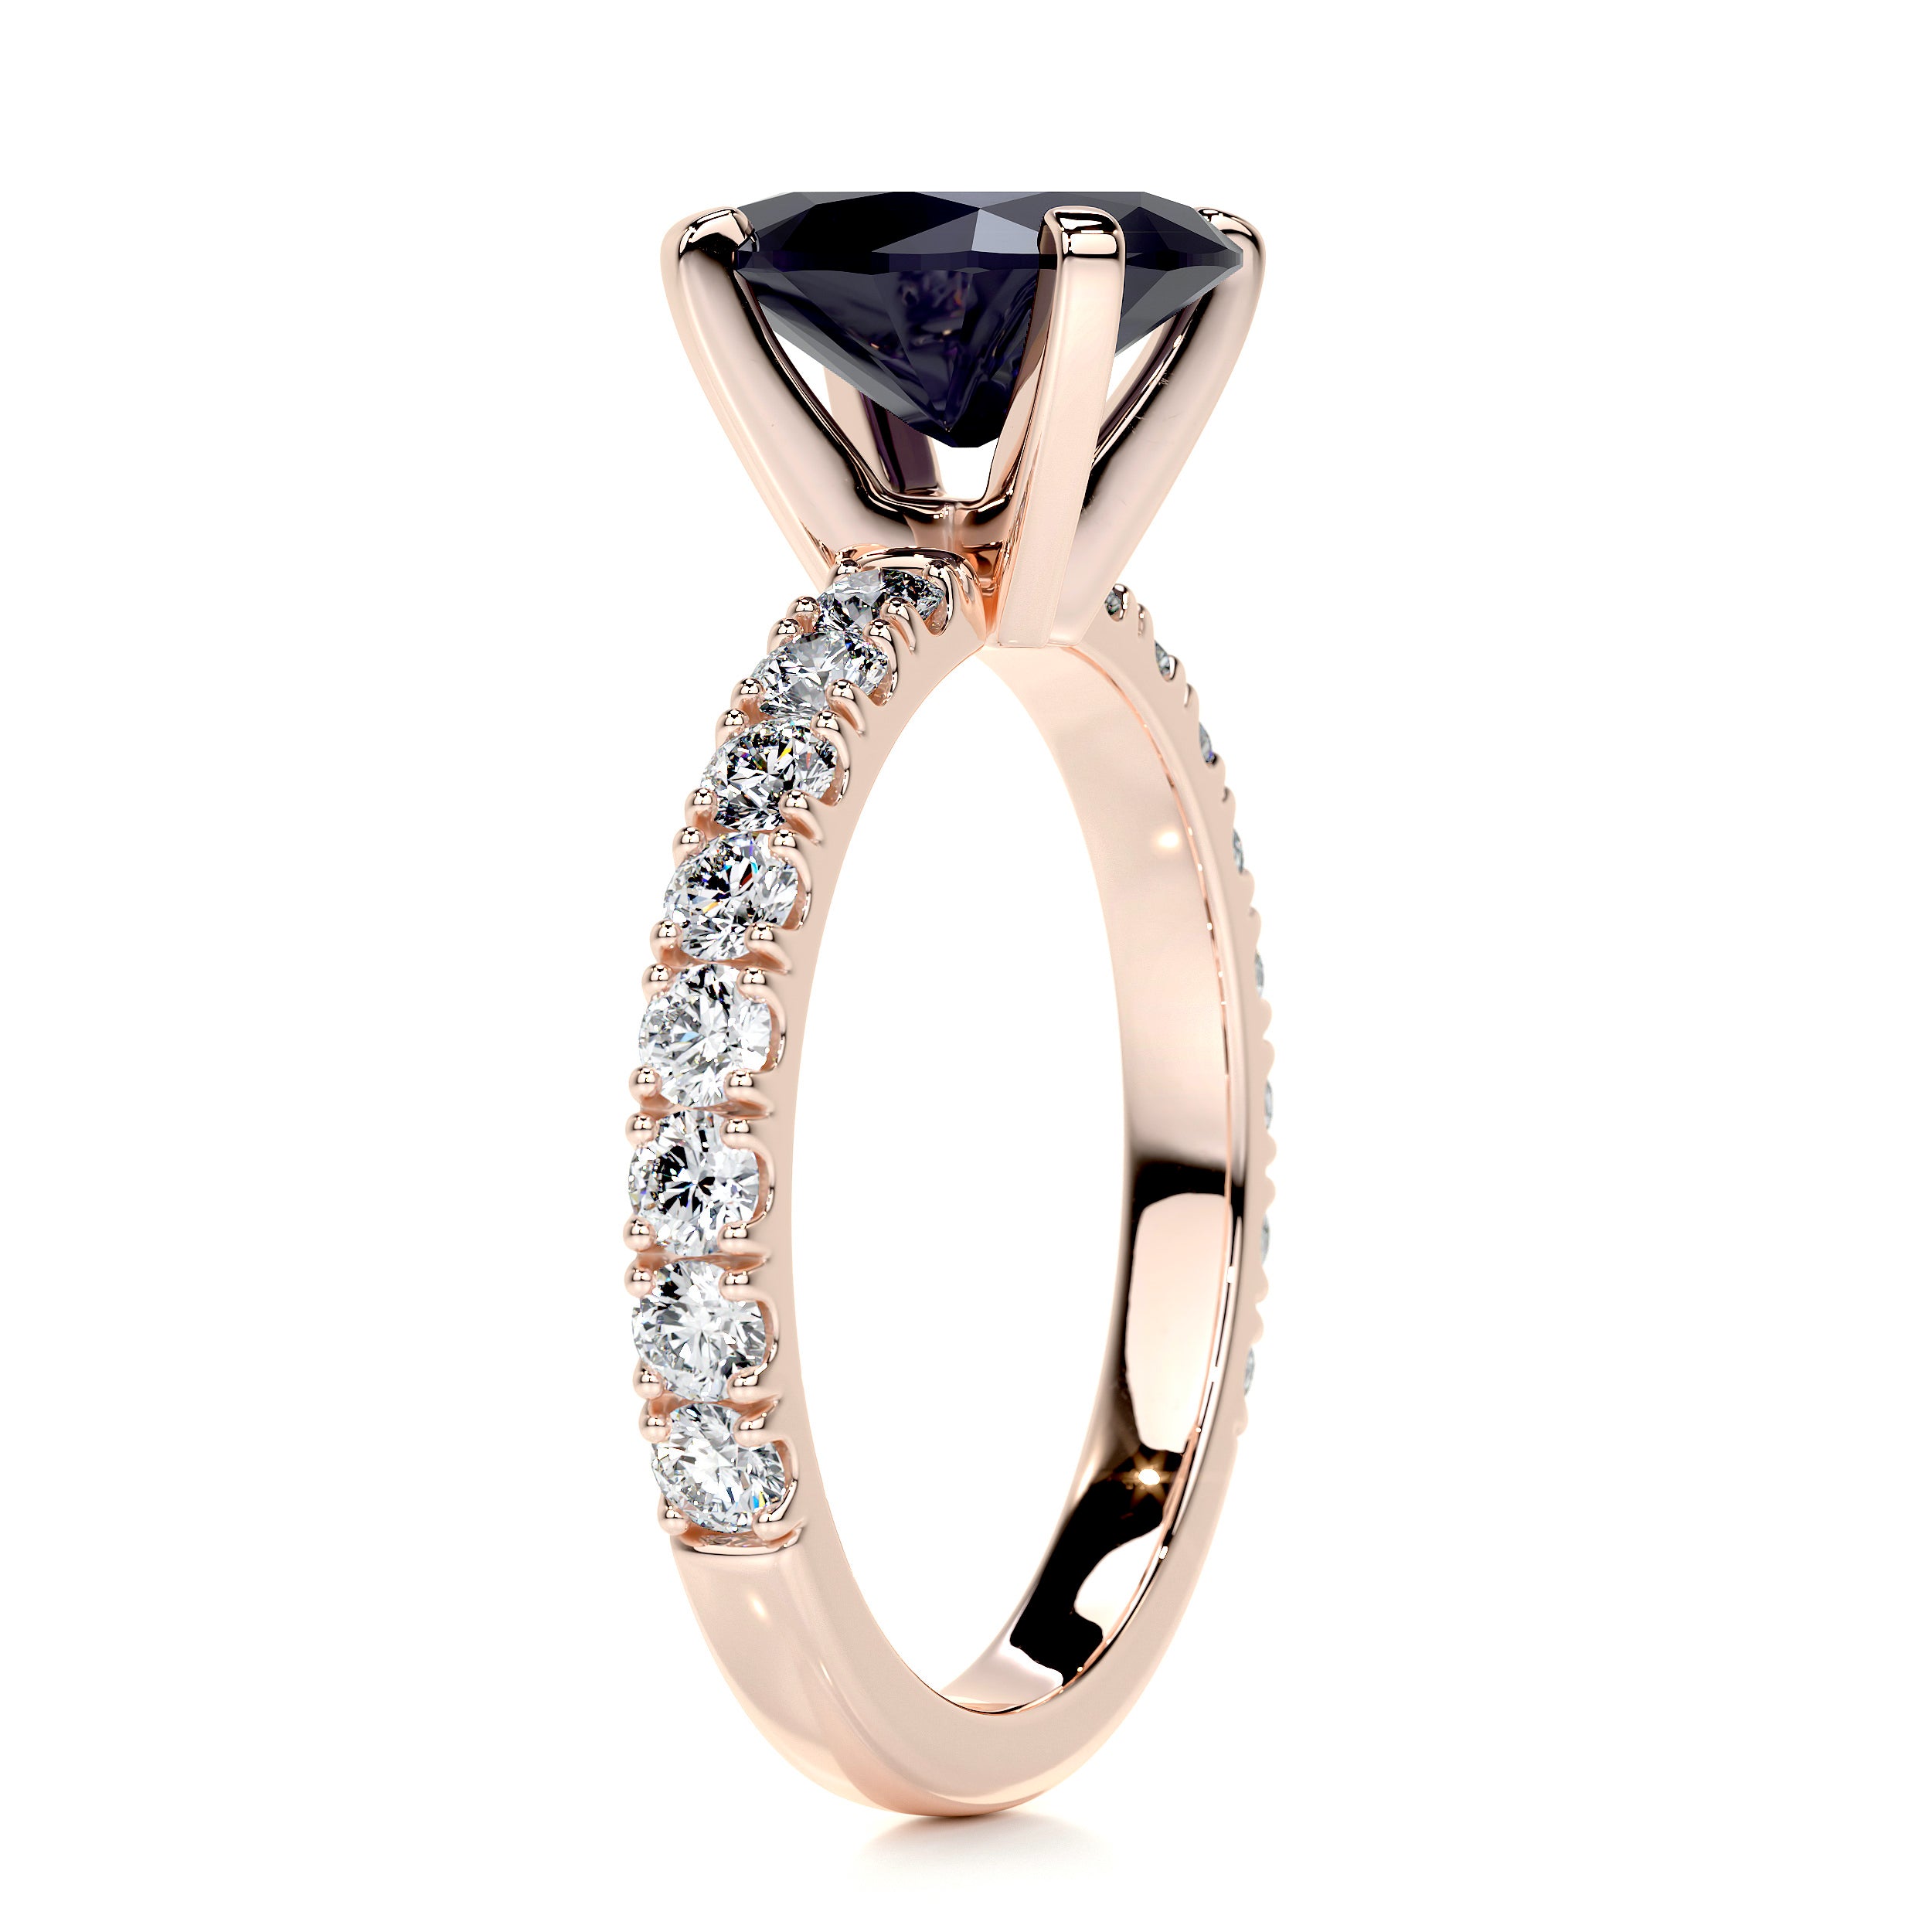 Alison Gemstone & Diamonds Ring   (3 Carat) -14K Rose Gold